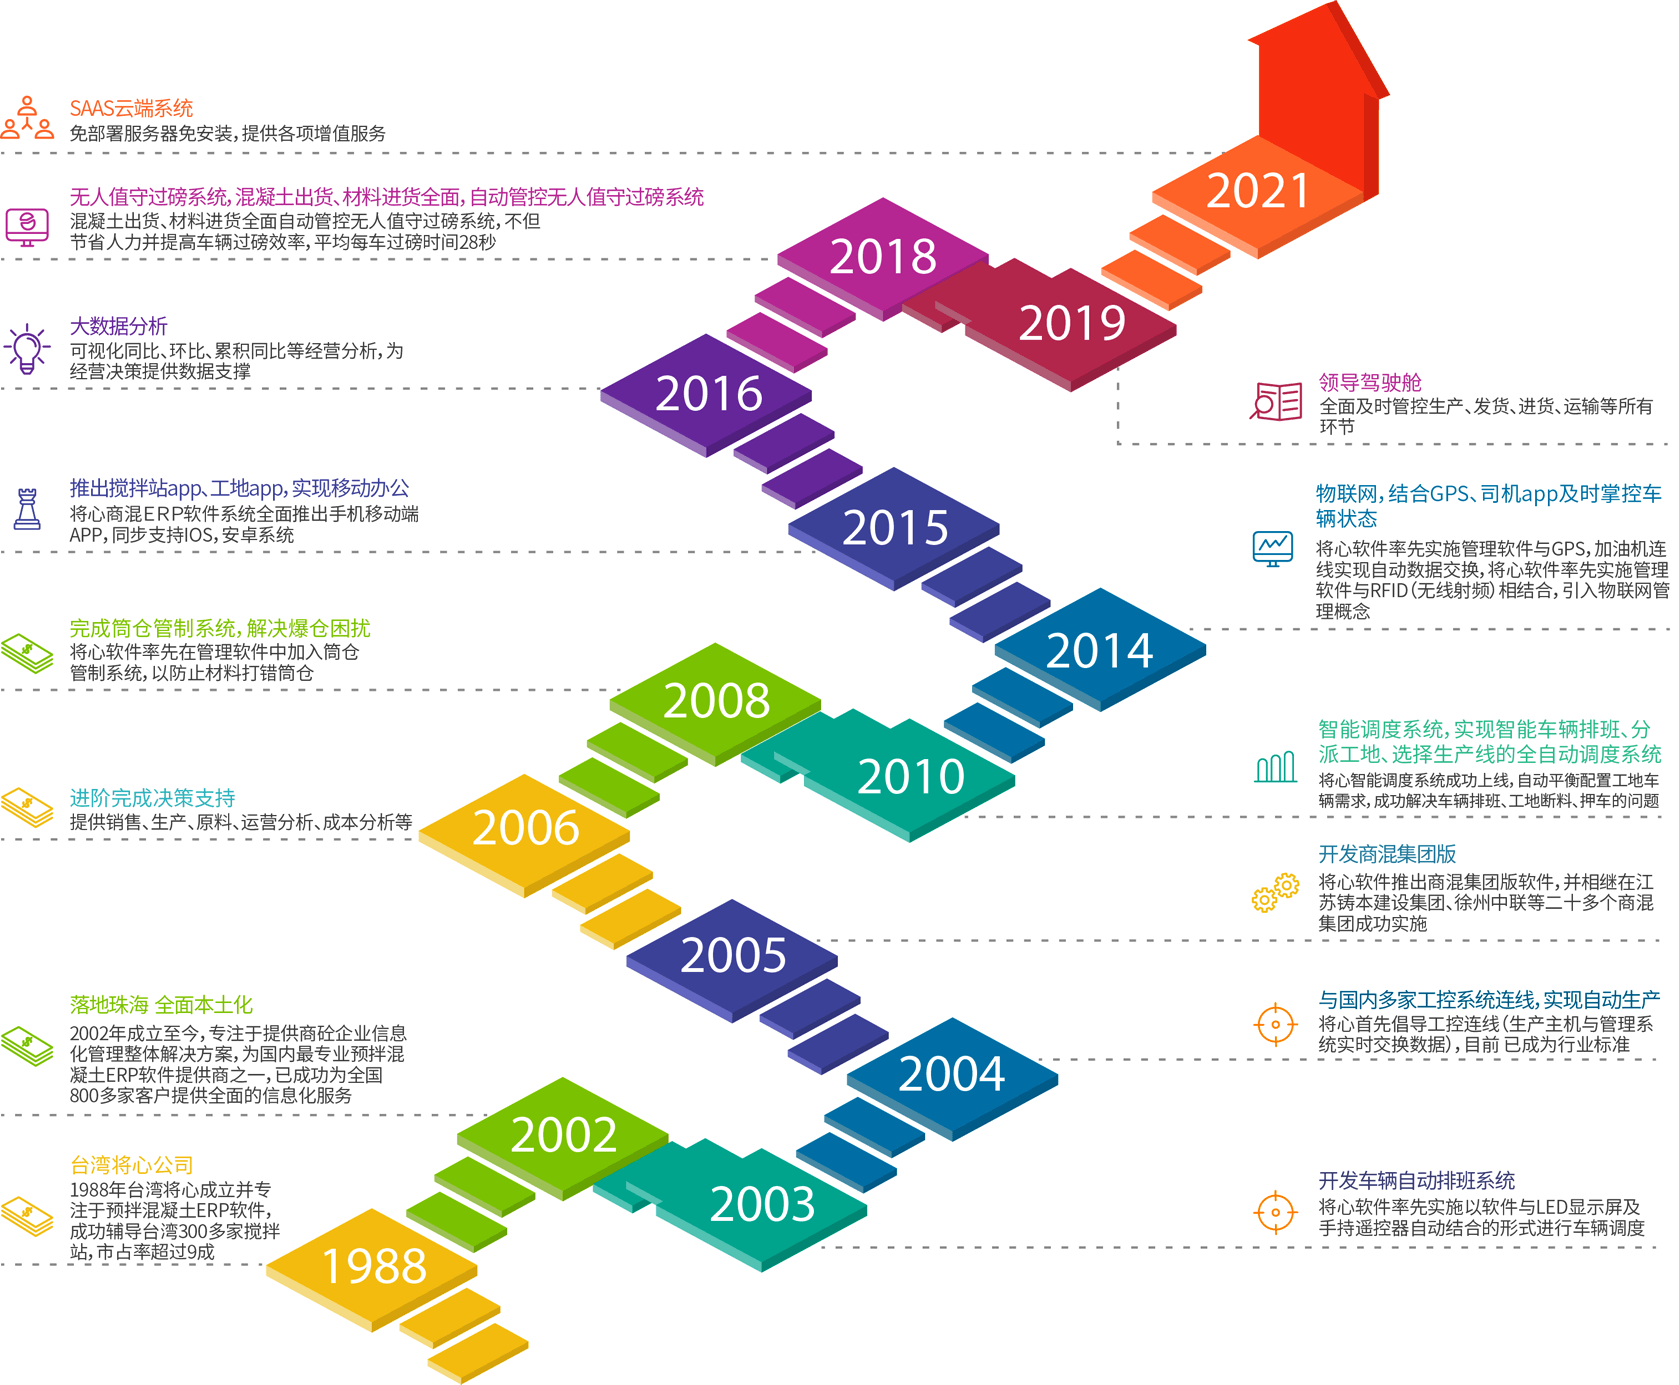 将心1988年~2021年历程